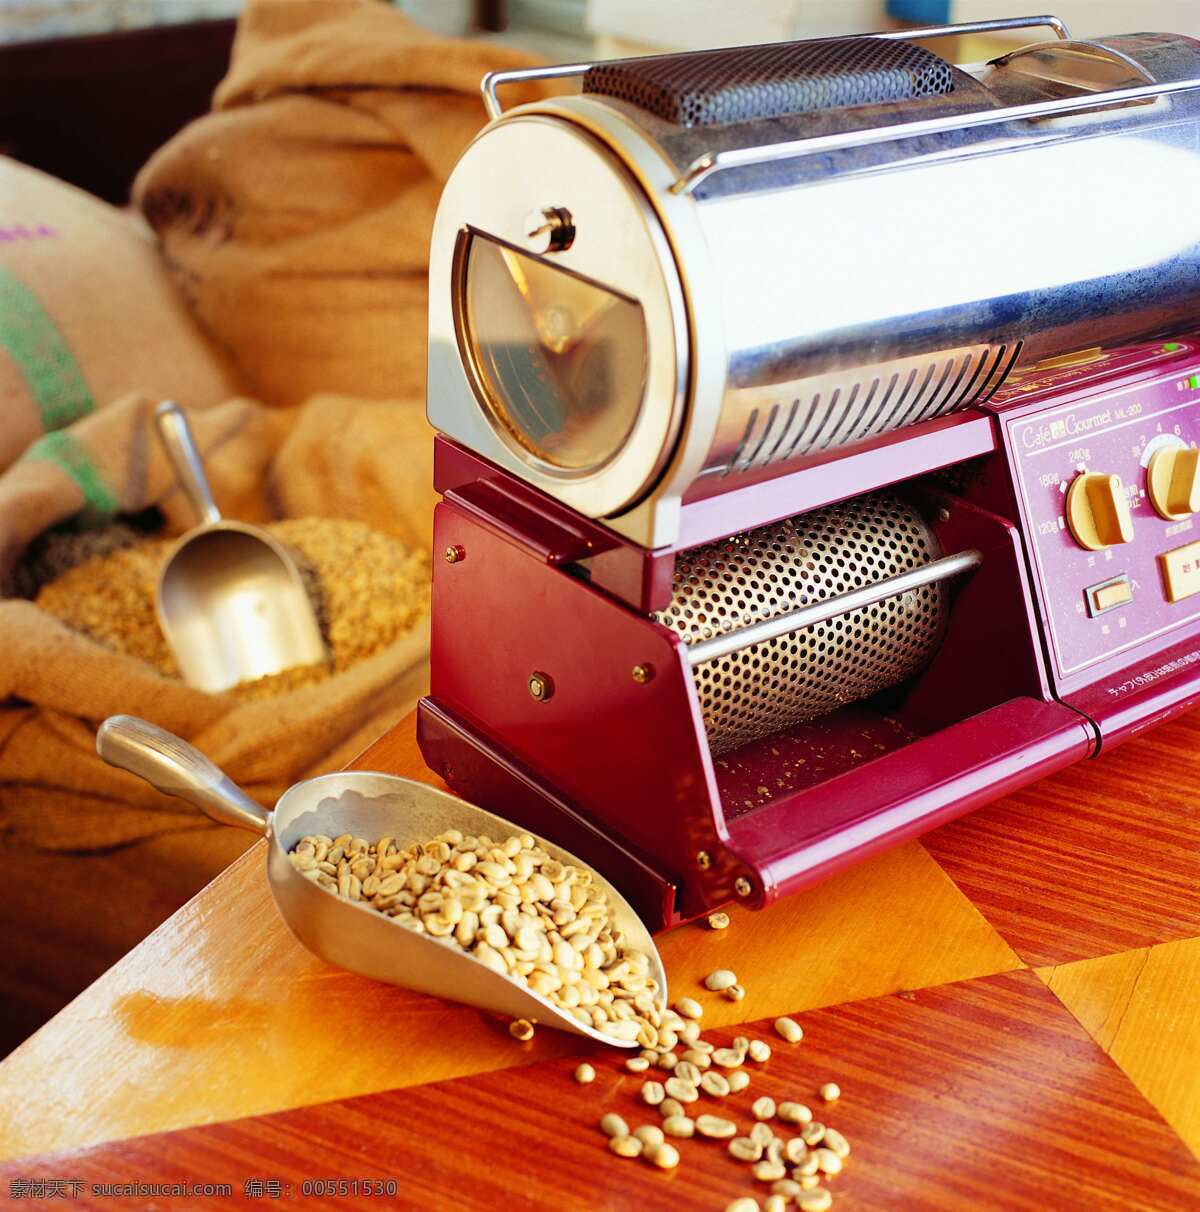 米色 咖啡豆 机械 咖啡 研磨机 制作 流程 米色咖啡豆 咖啡制作流程 电动研磨机